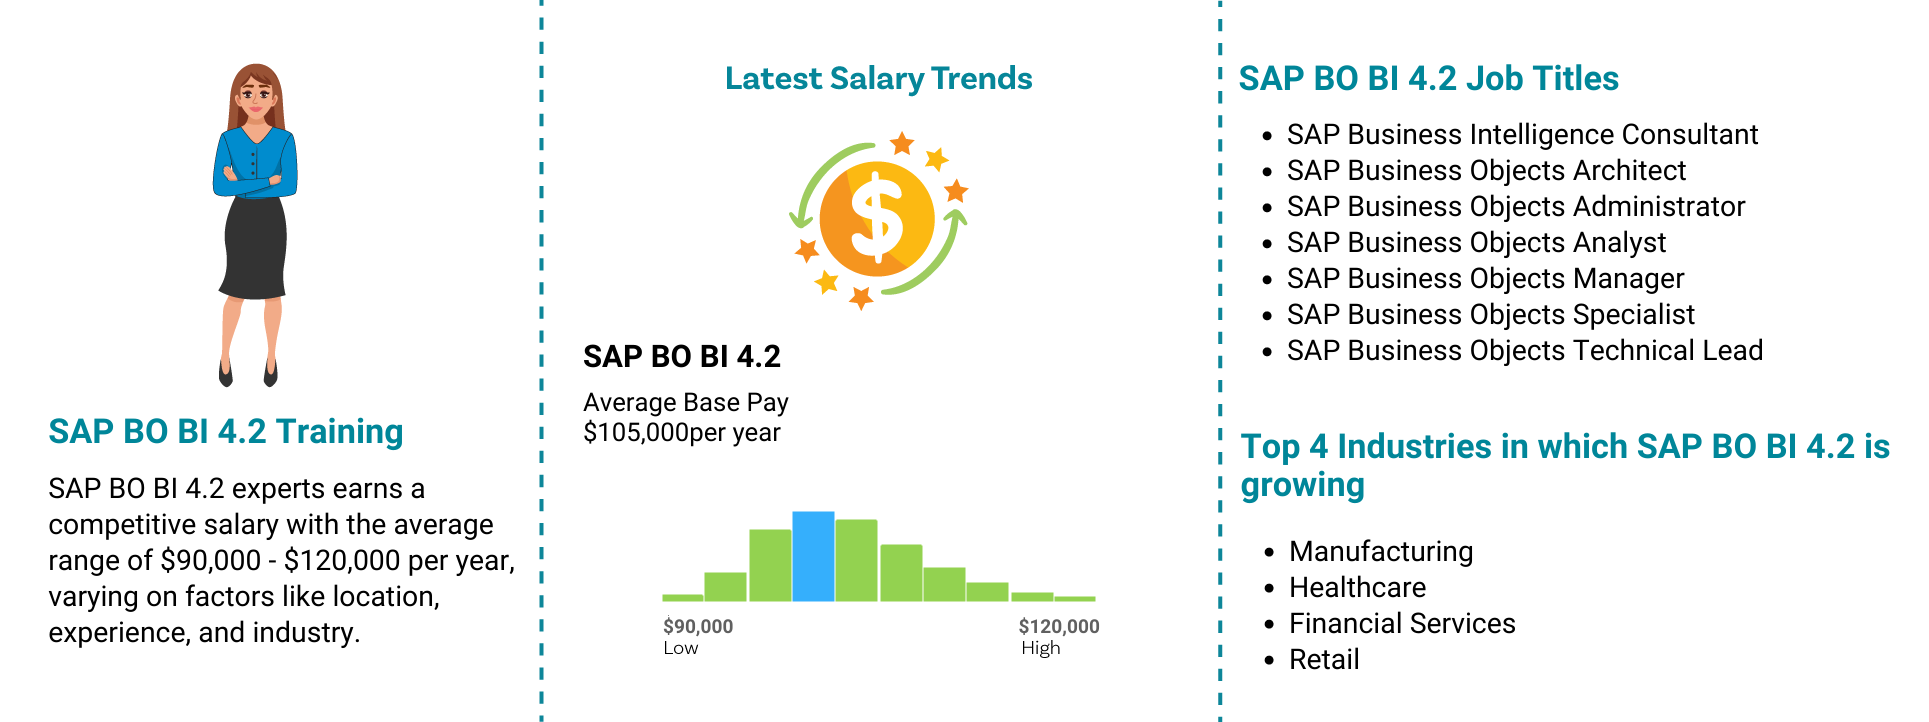 Job Outlook for SAP BO BI 4.2